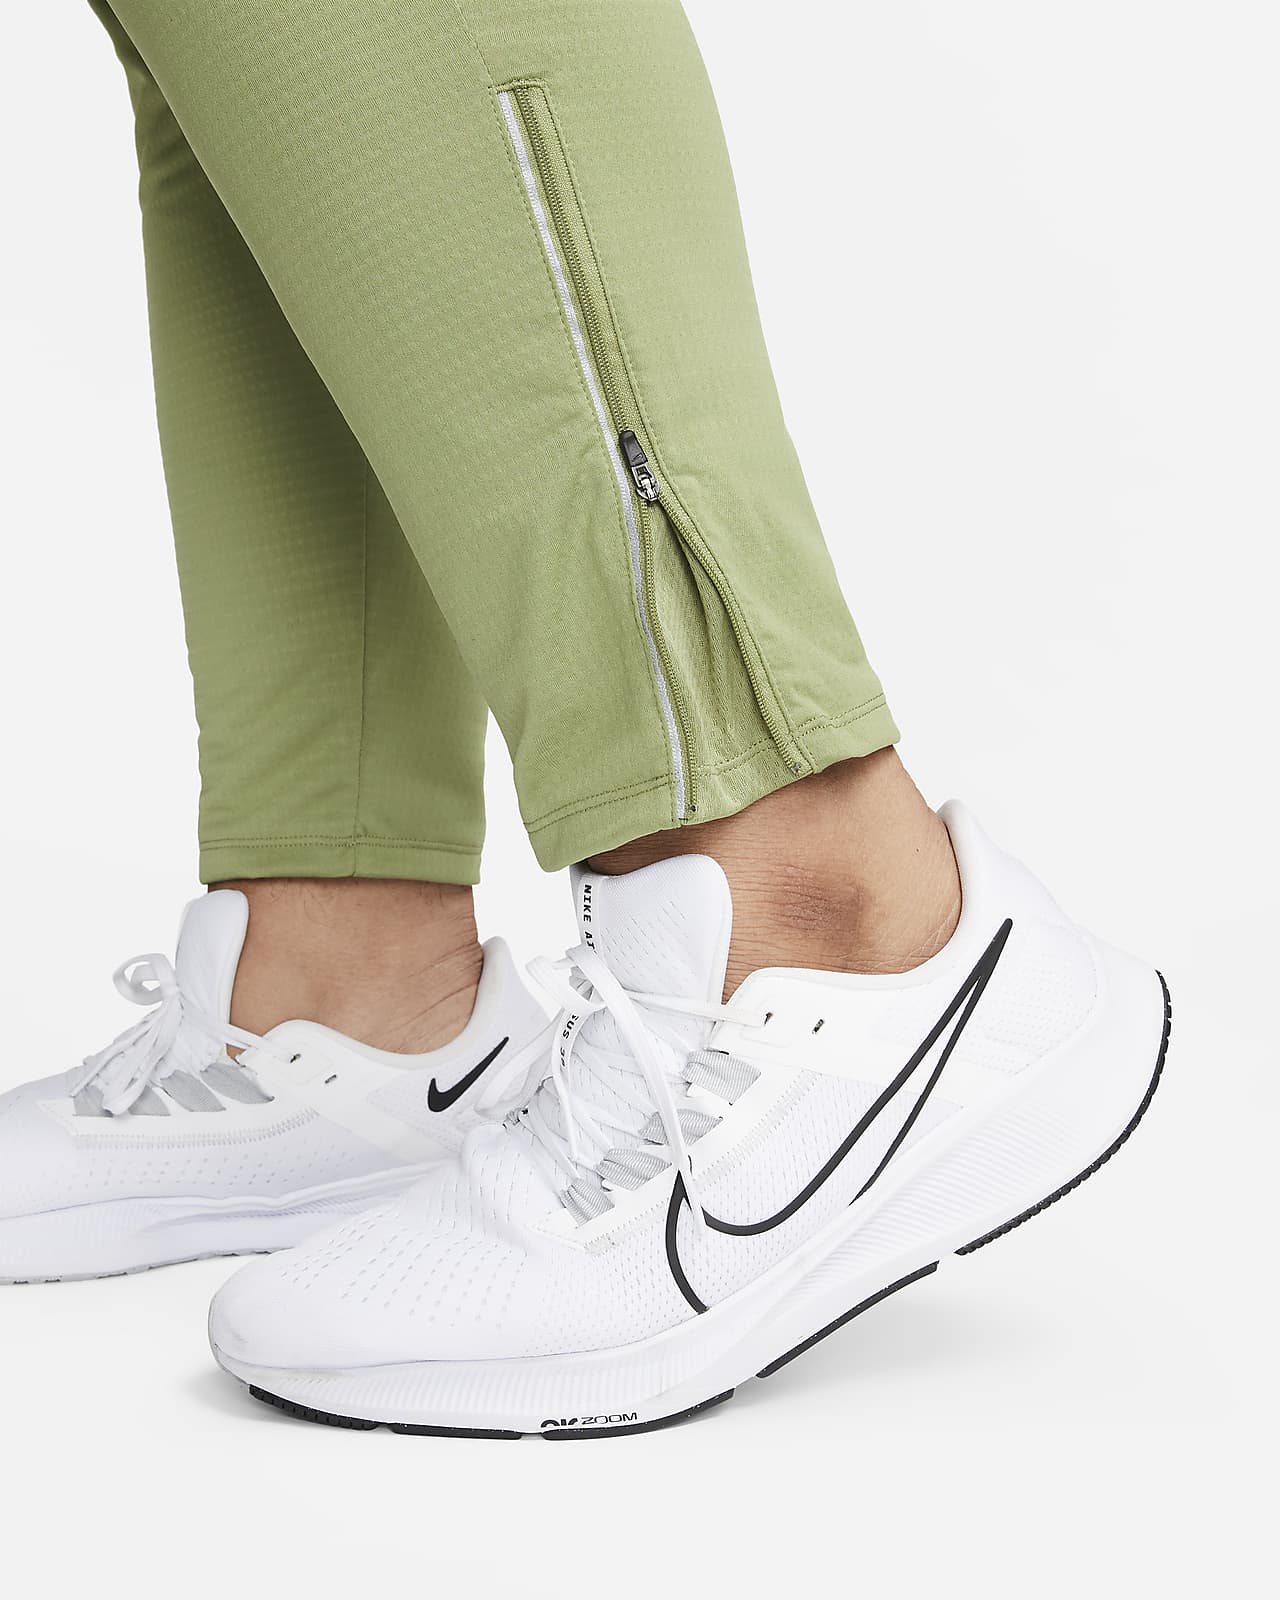 Pants de running de ajuste slim para hombre Nike Dri-FIT Running Division  Phenom